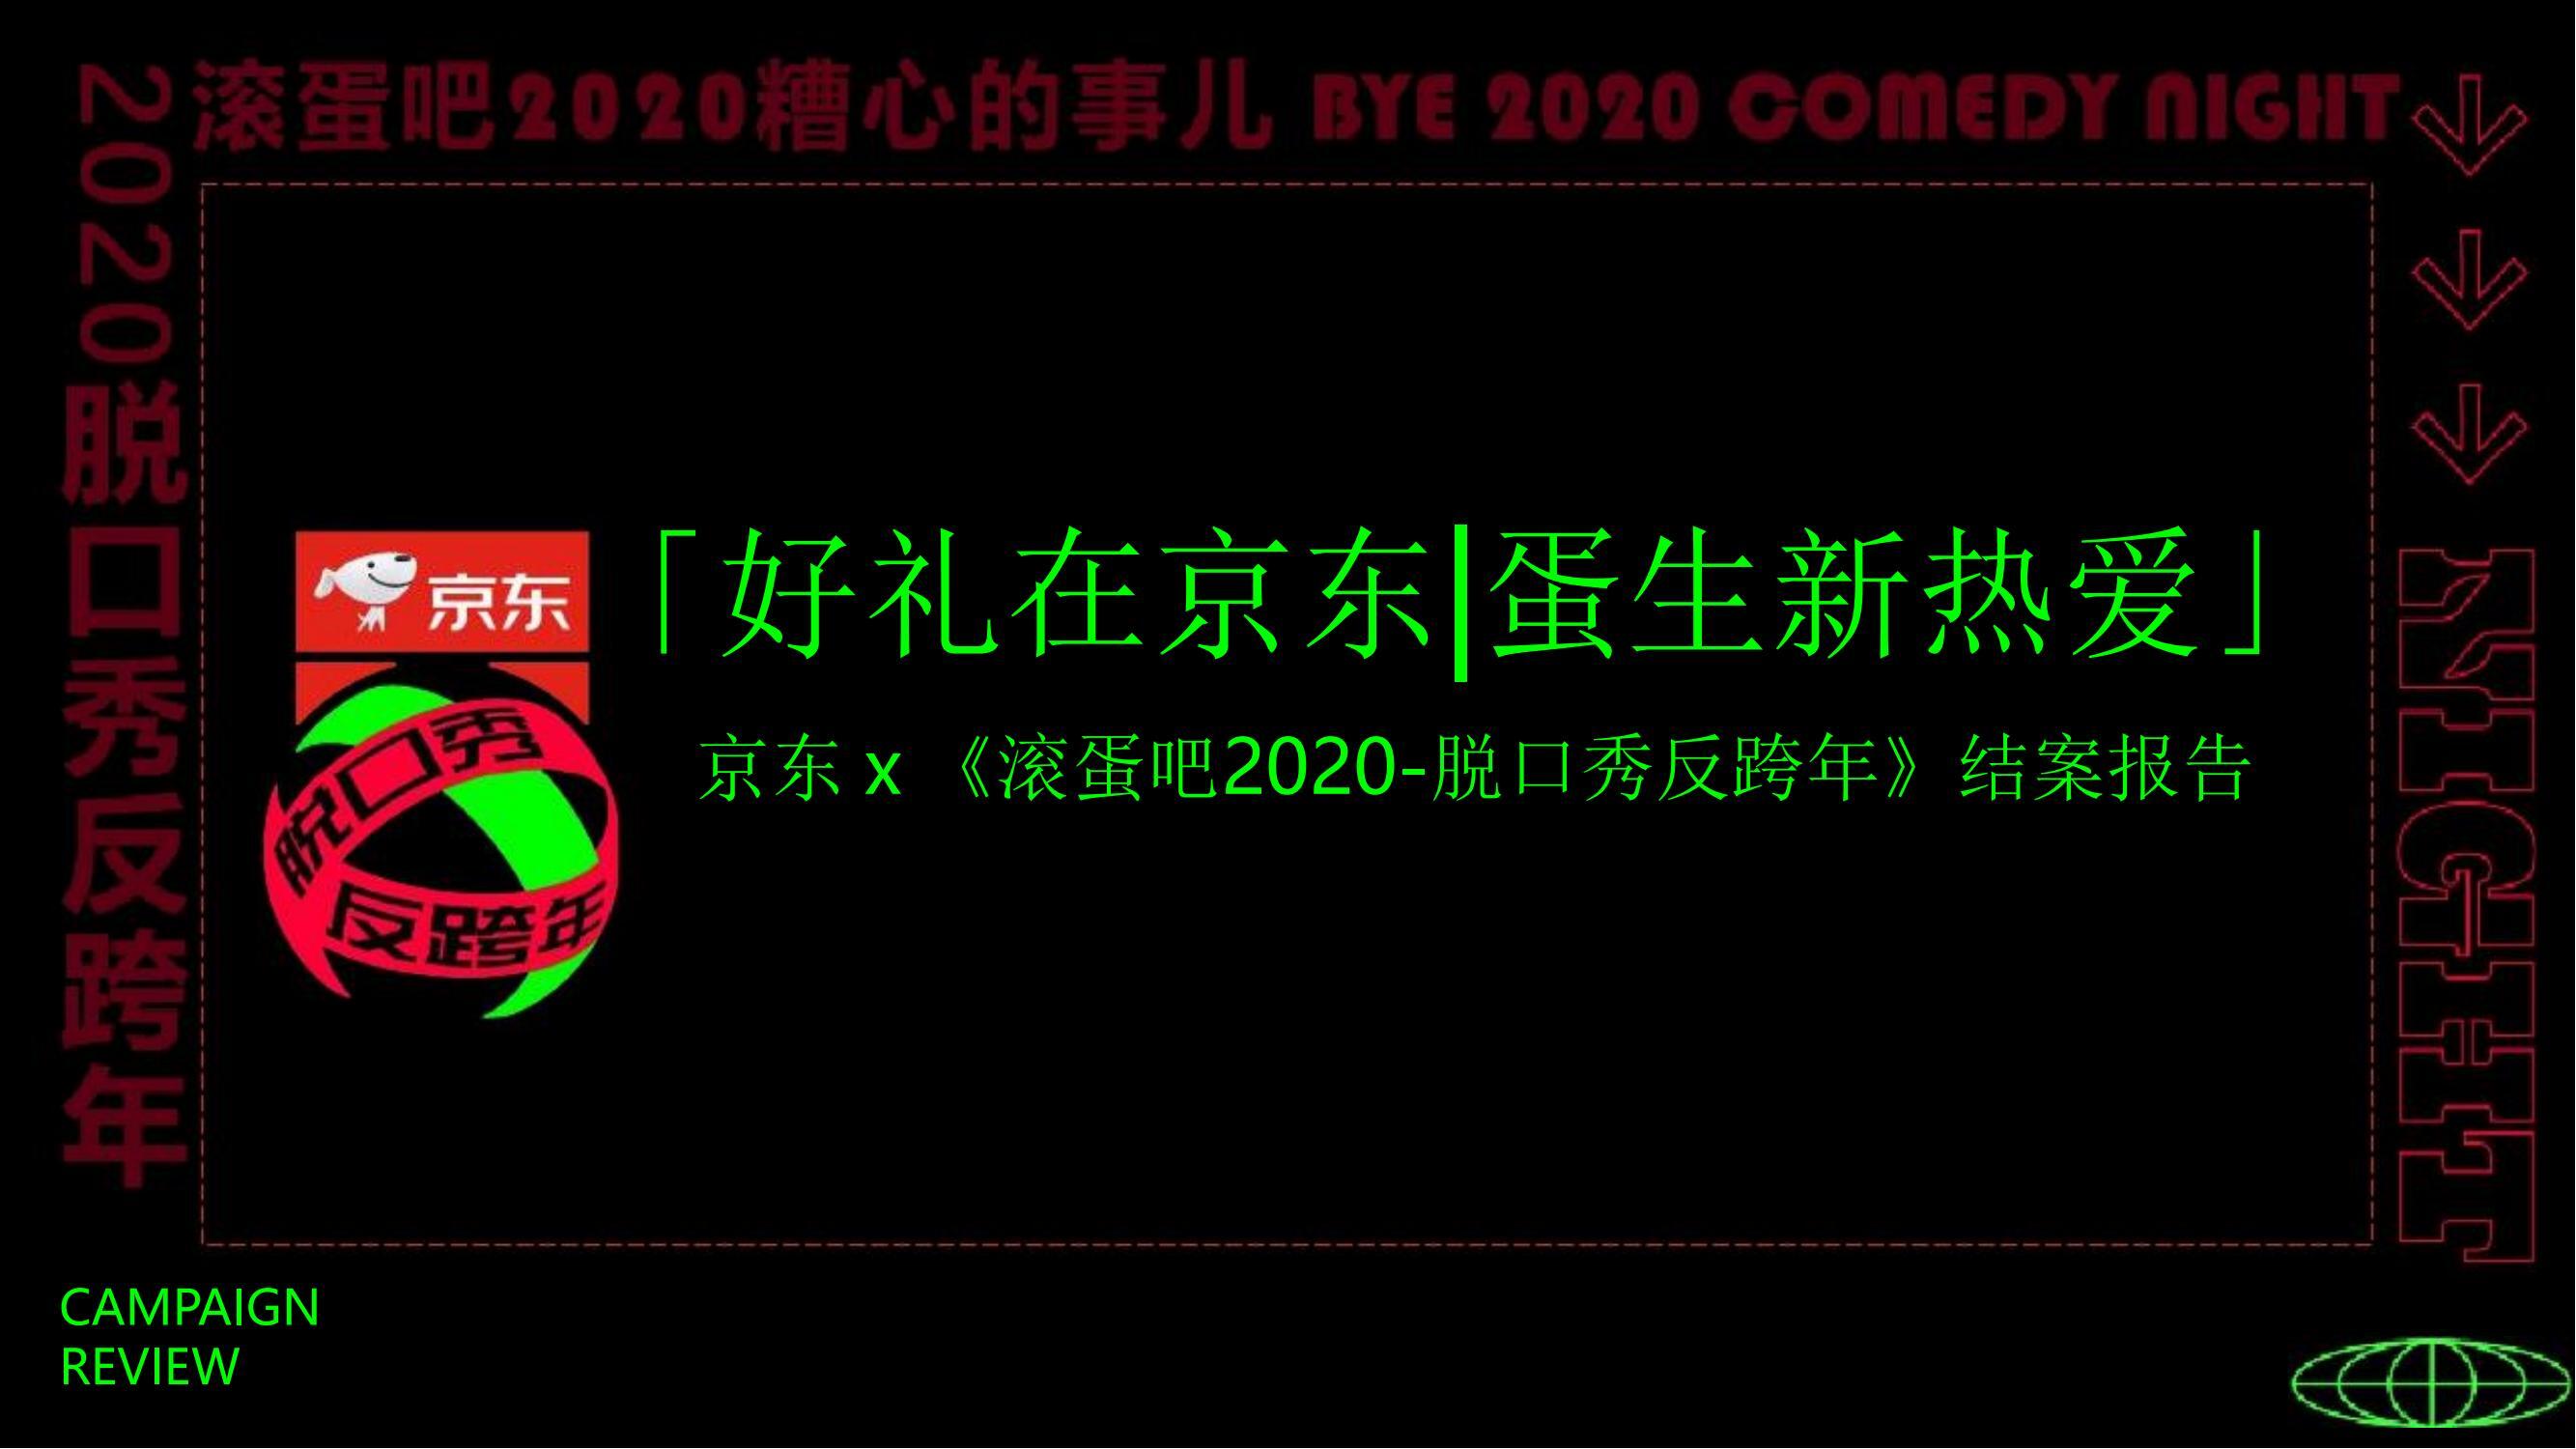 京东 x 《滚蛋吧2020-脱口秀反跨年》营销结案